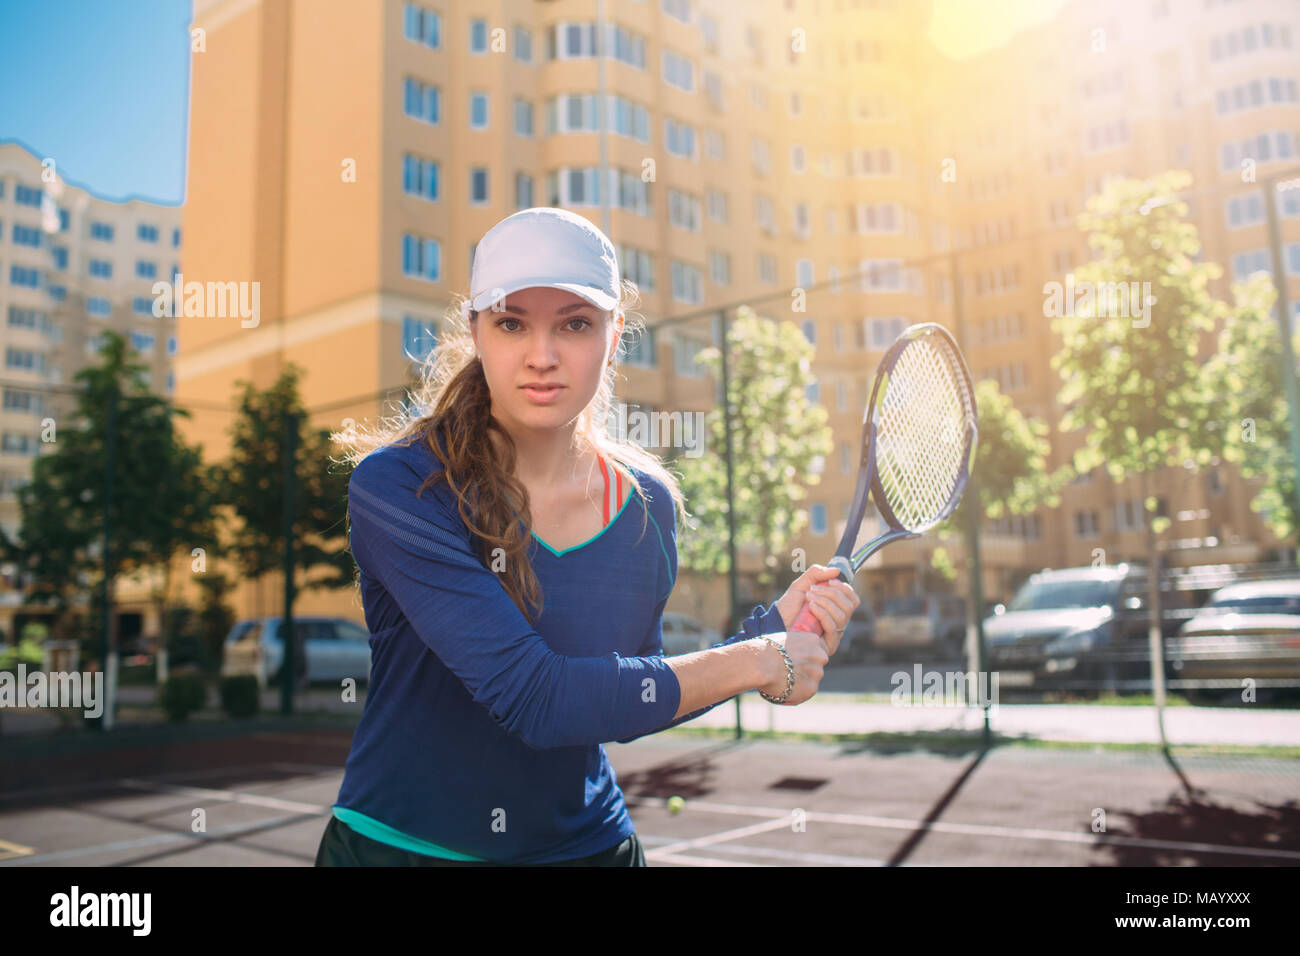 Femme , à la caméra et au holding tennis racket. Joueur de tennis attrayant jouer au tennis piscine,la pratique sur la cour au jour ensoleillé, sur une ville b Banque D'Images